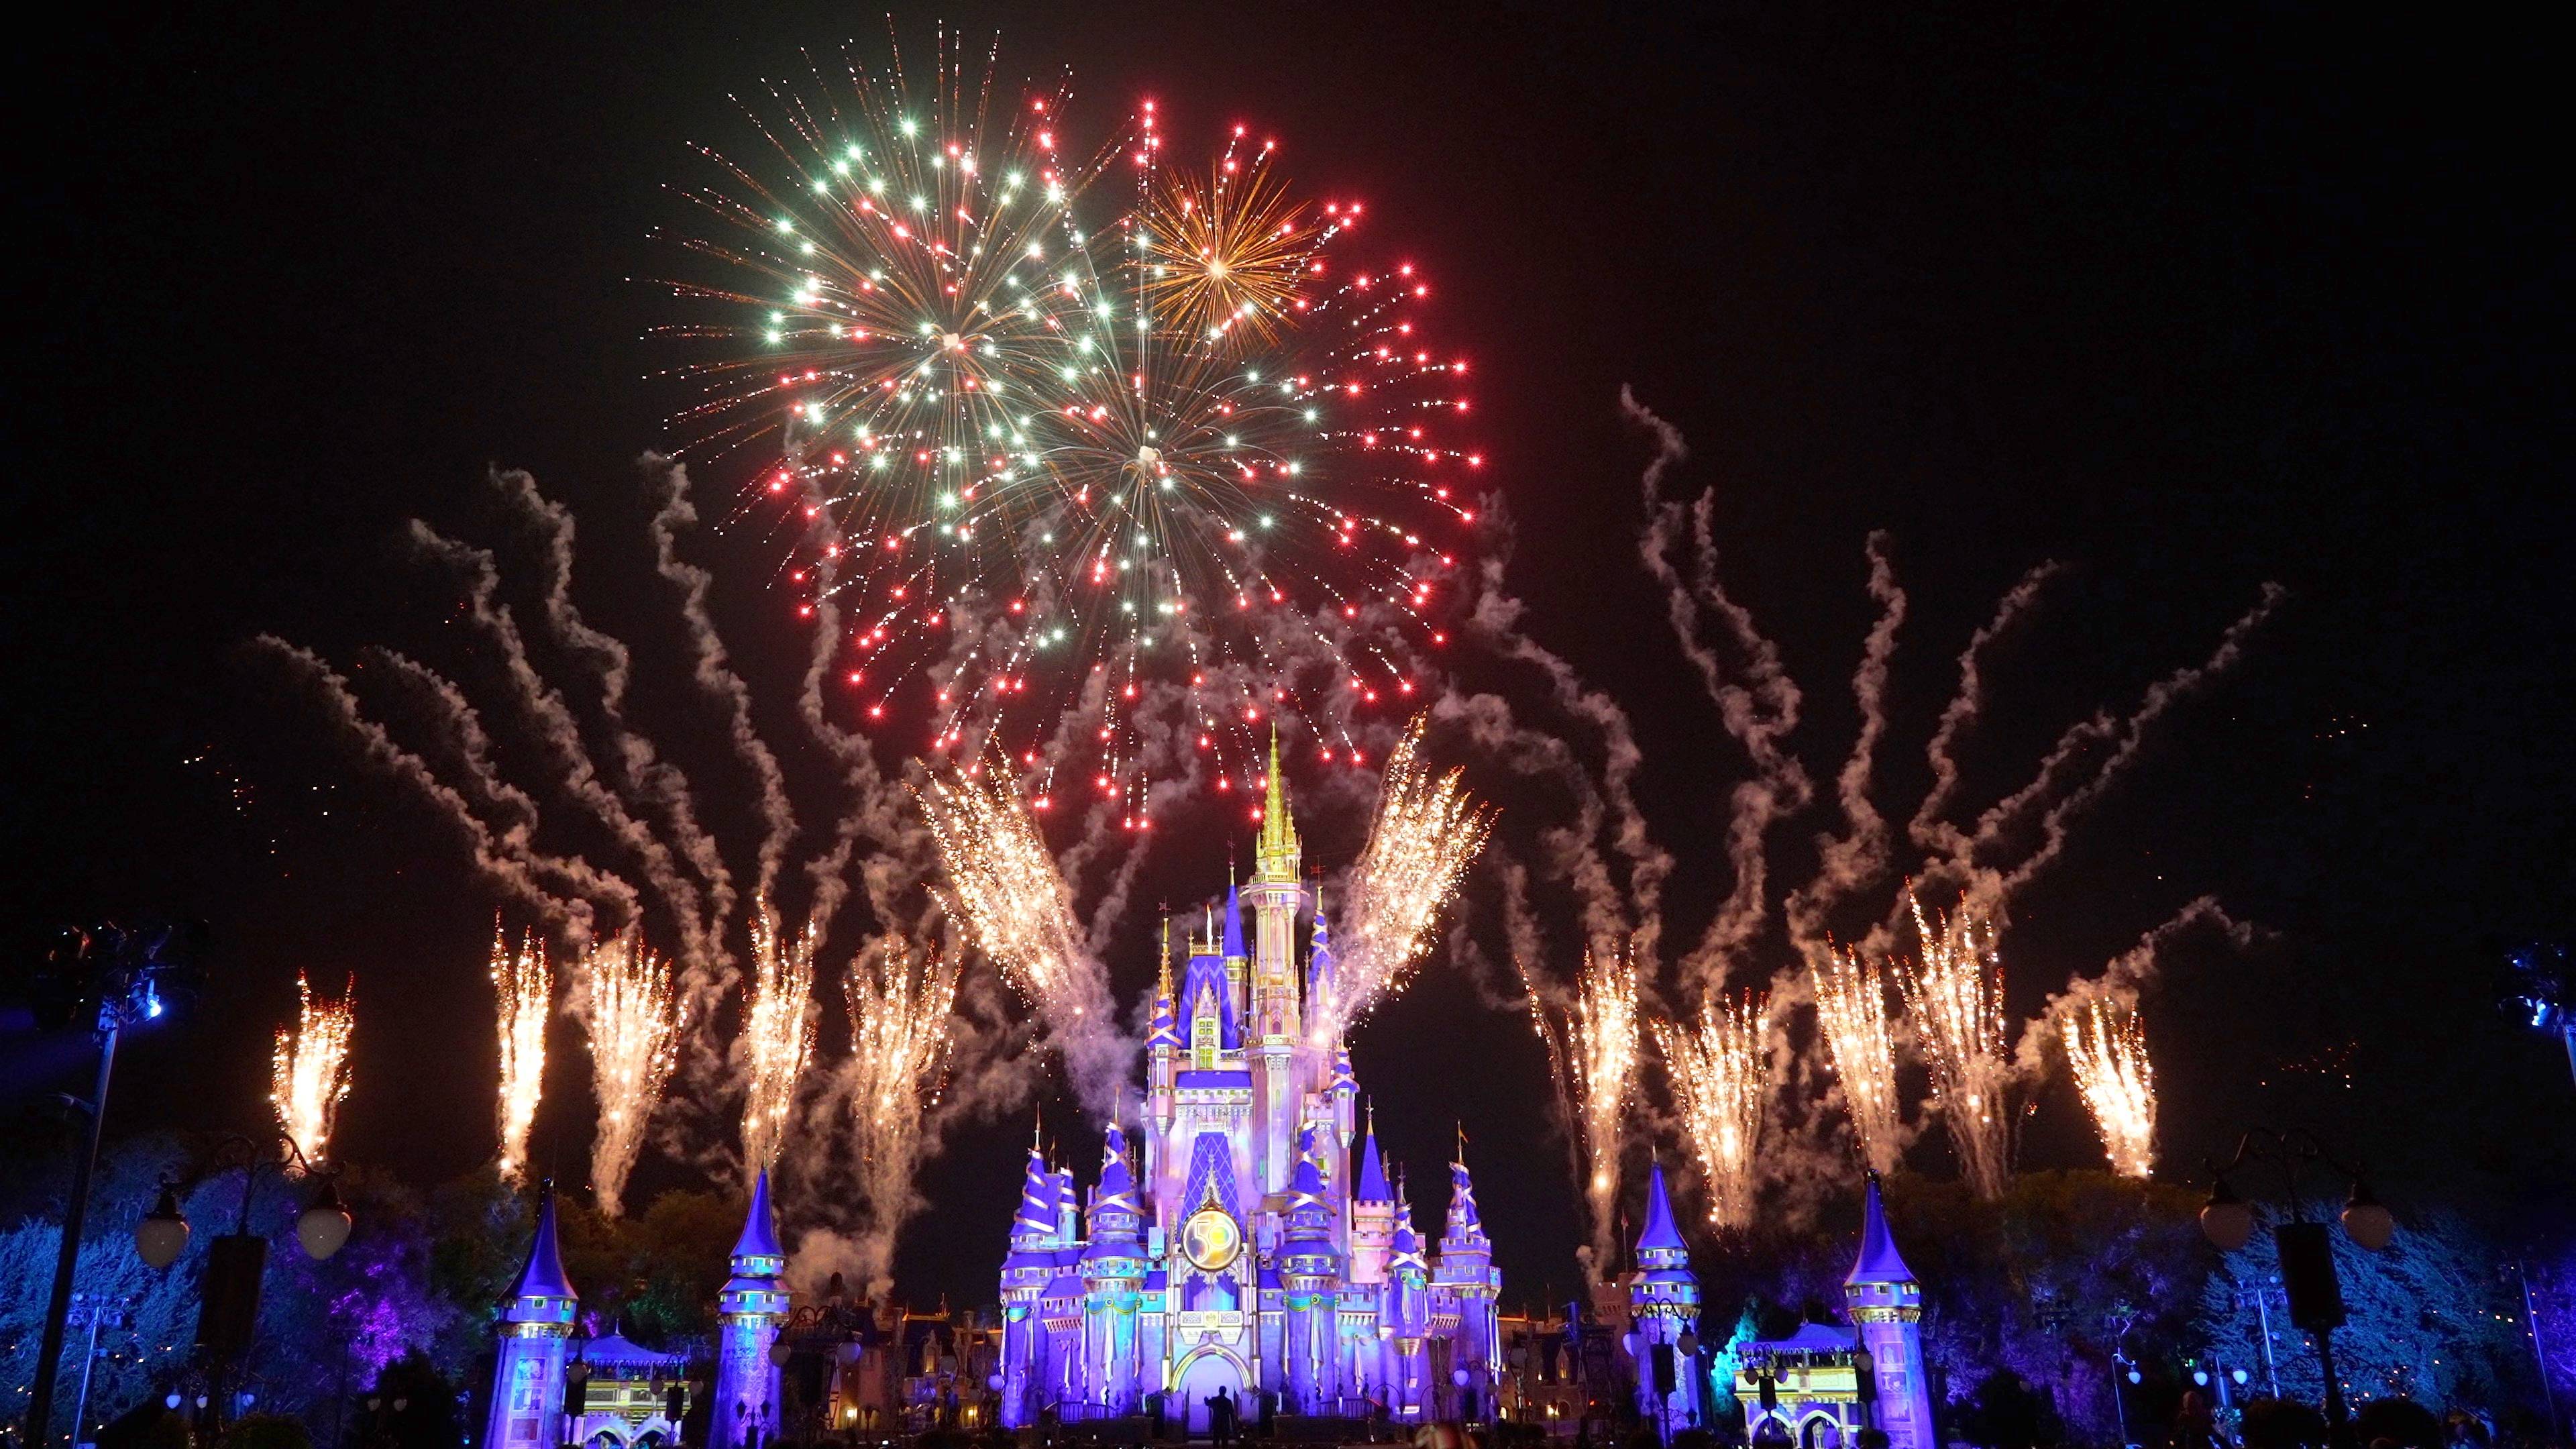 Minnie's Wonderful Christmastime Fireworks show 2021